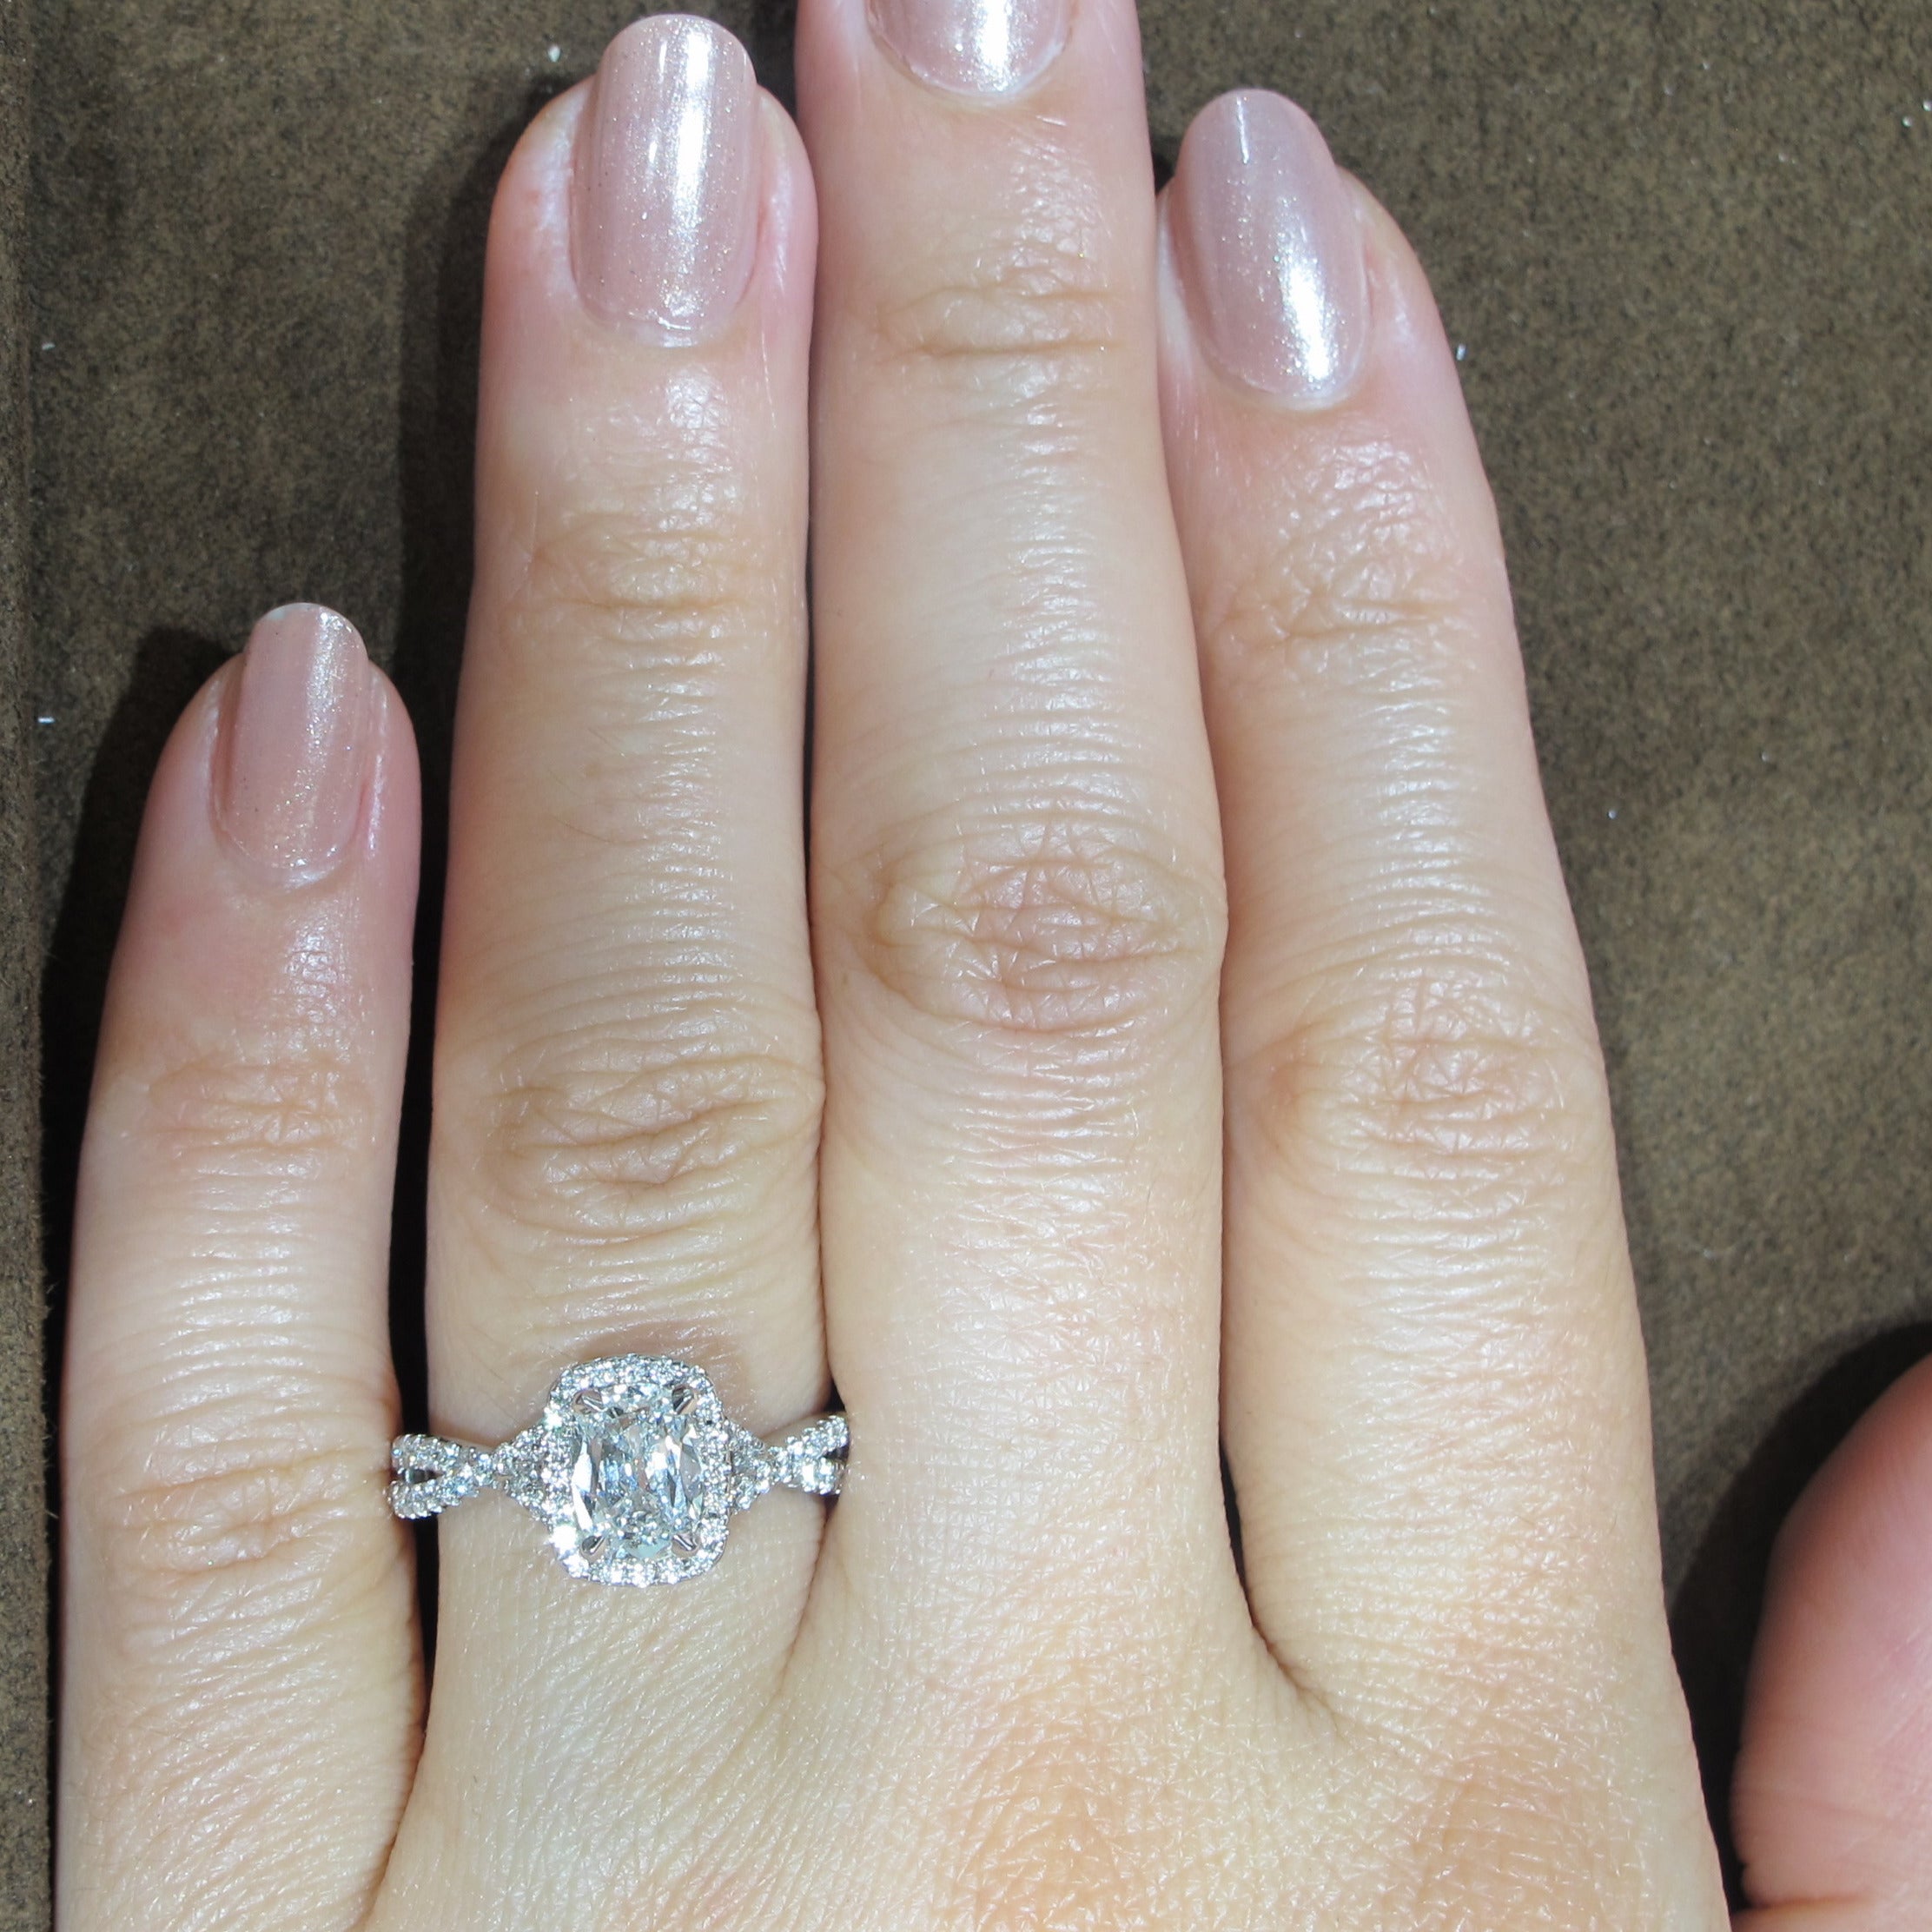 Henri Daussi 1.44ctw GIA Certified Cushion Cut Split Shank Diamond Engagement Ring